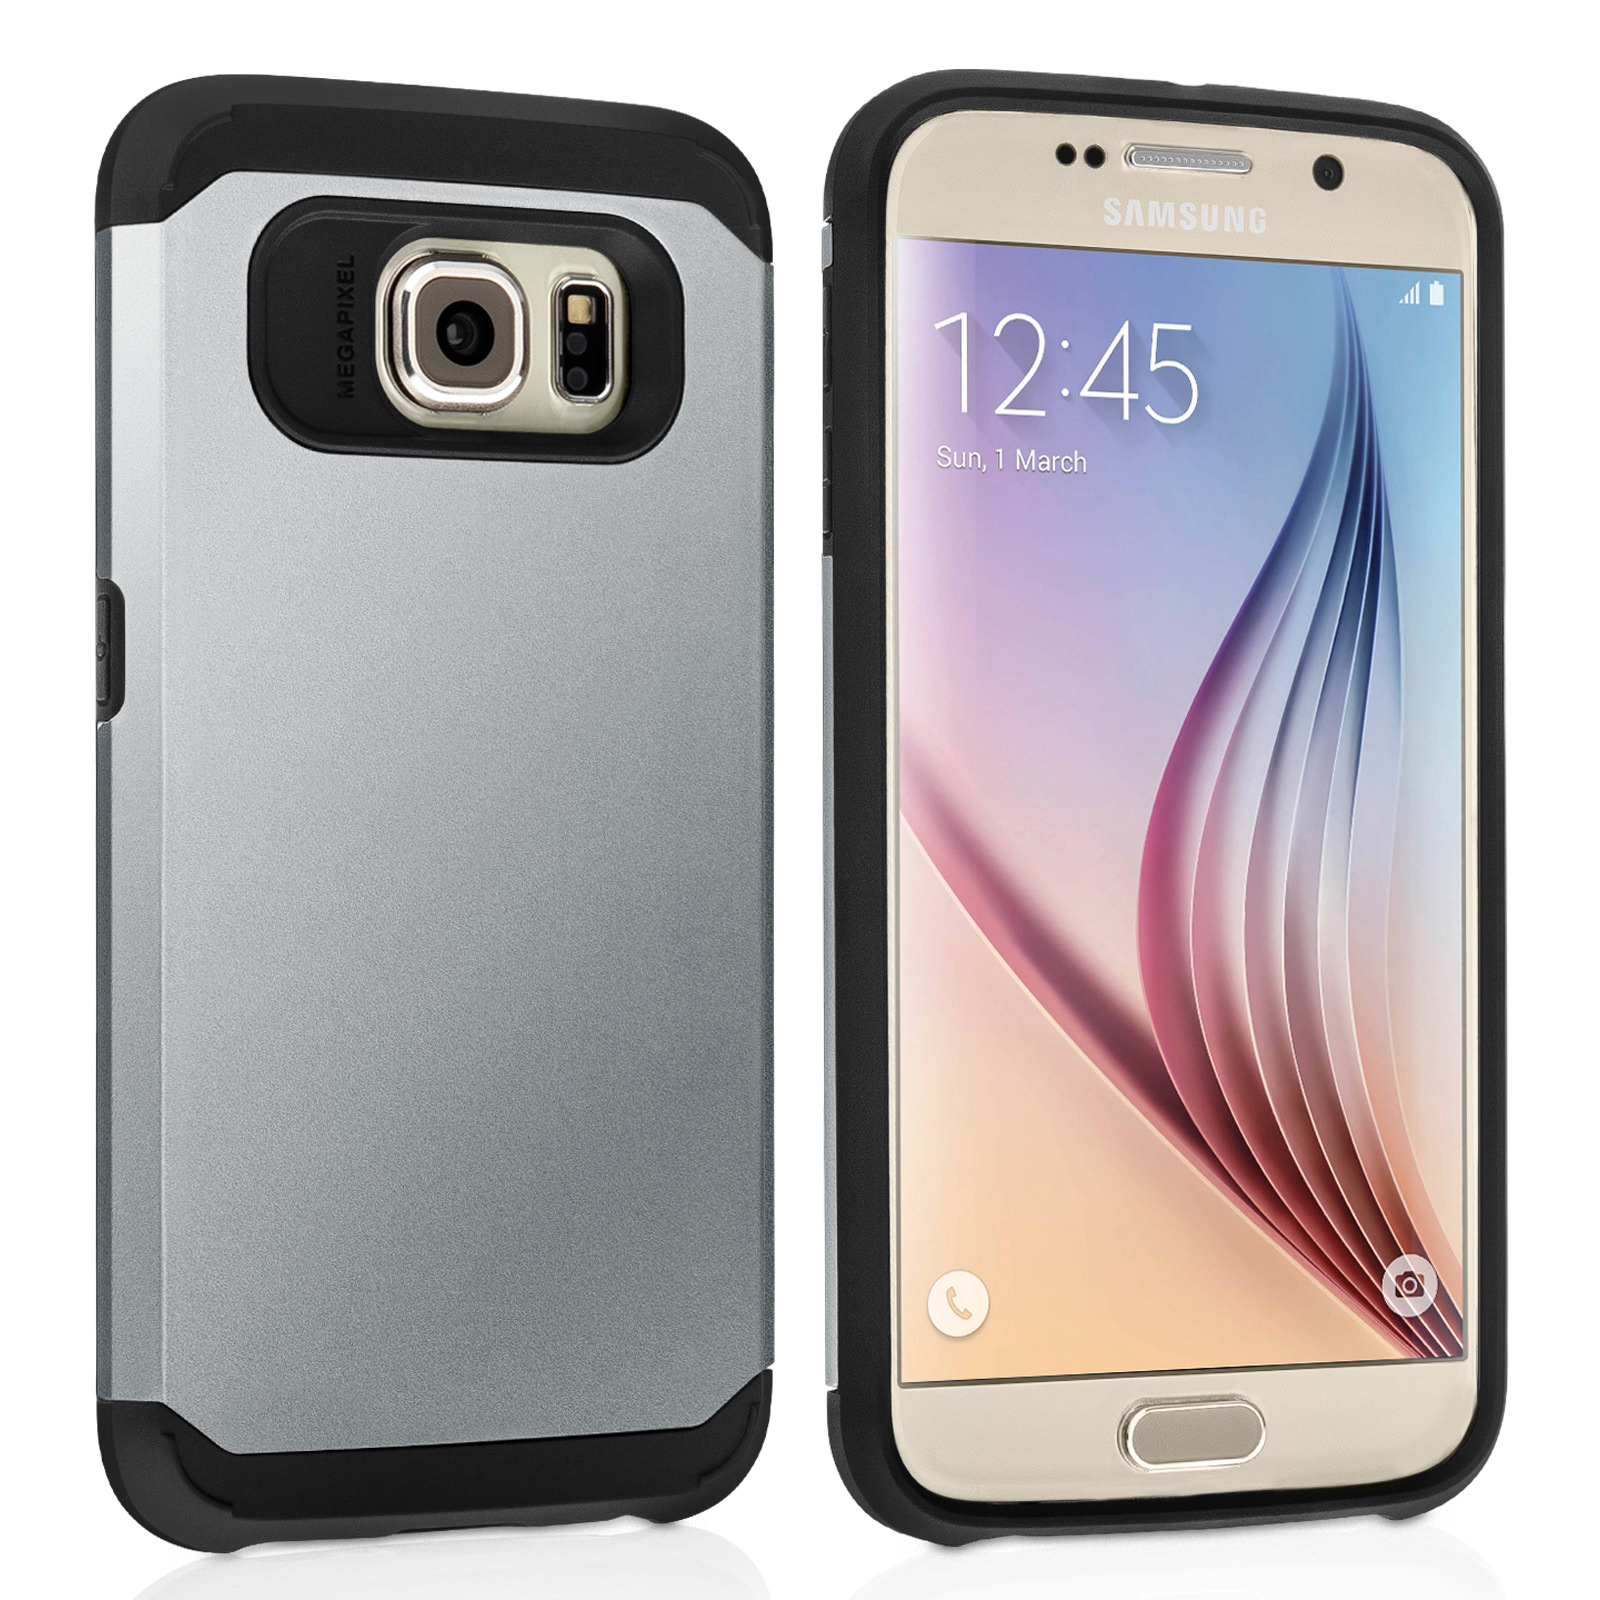 Caseflex Samsung Galaxy S6 Tough Armor - Satin Silver Case